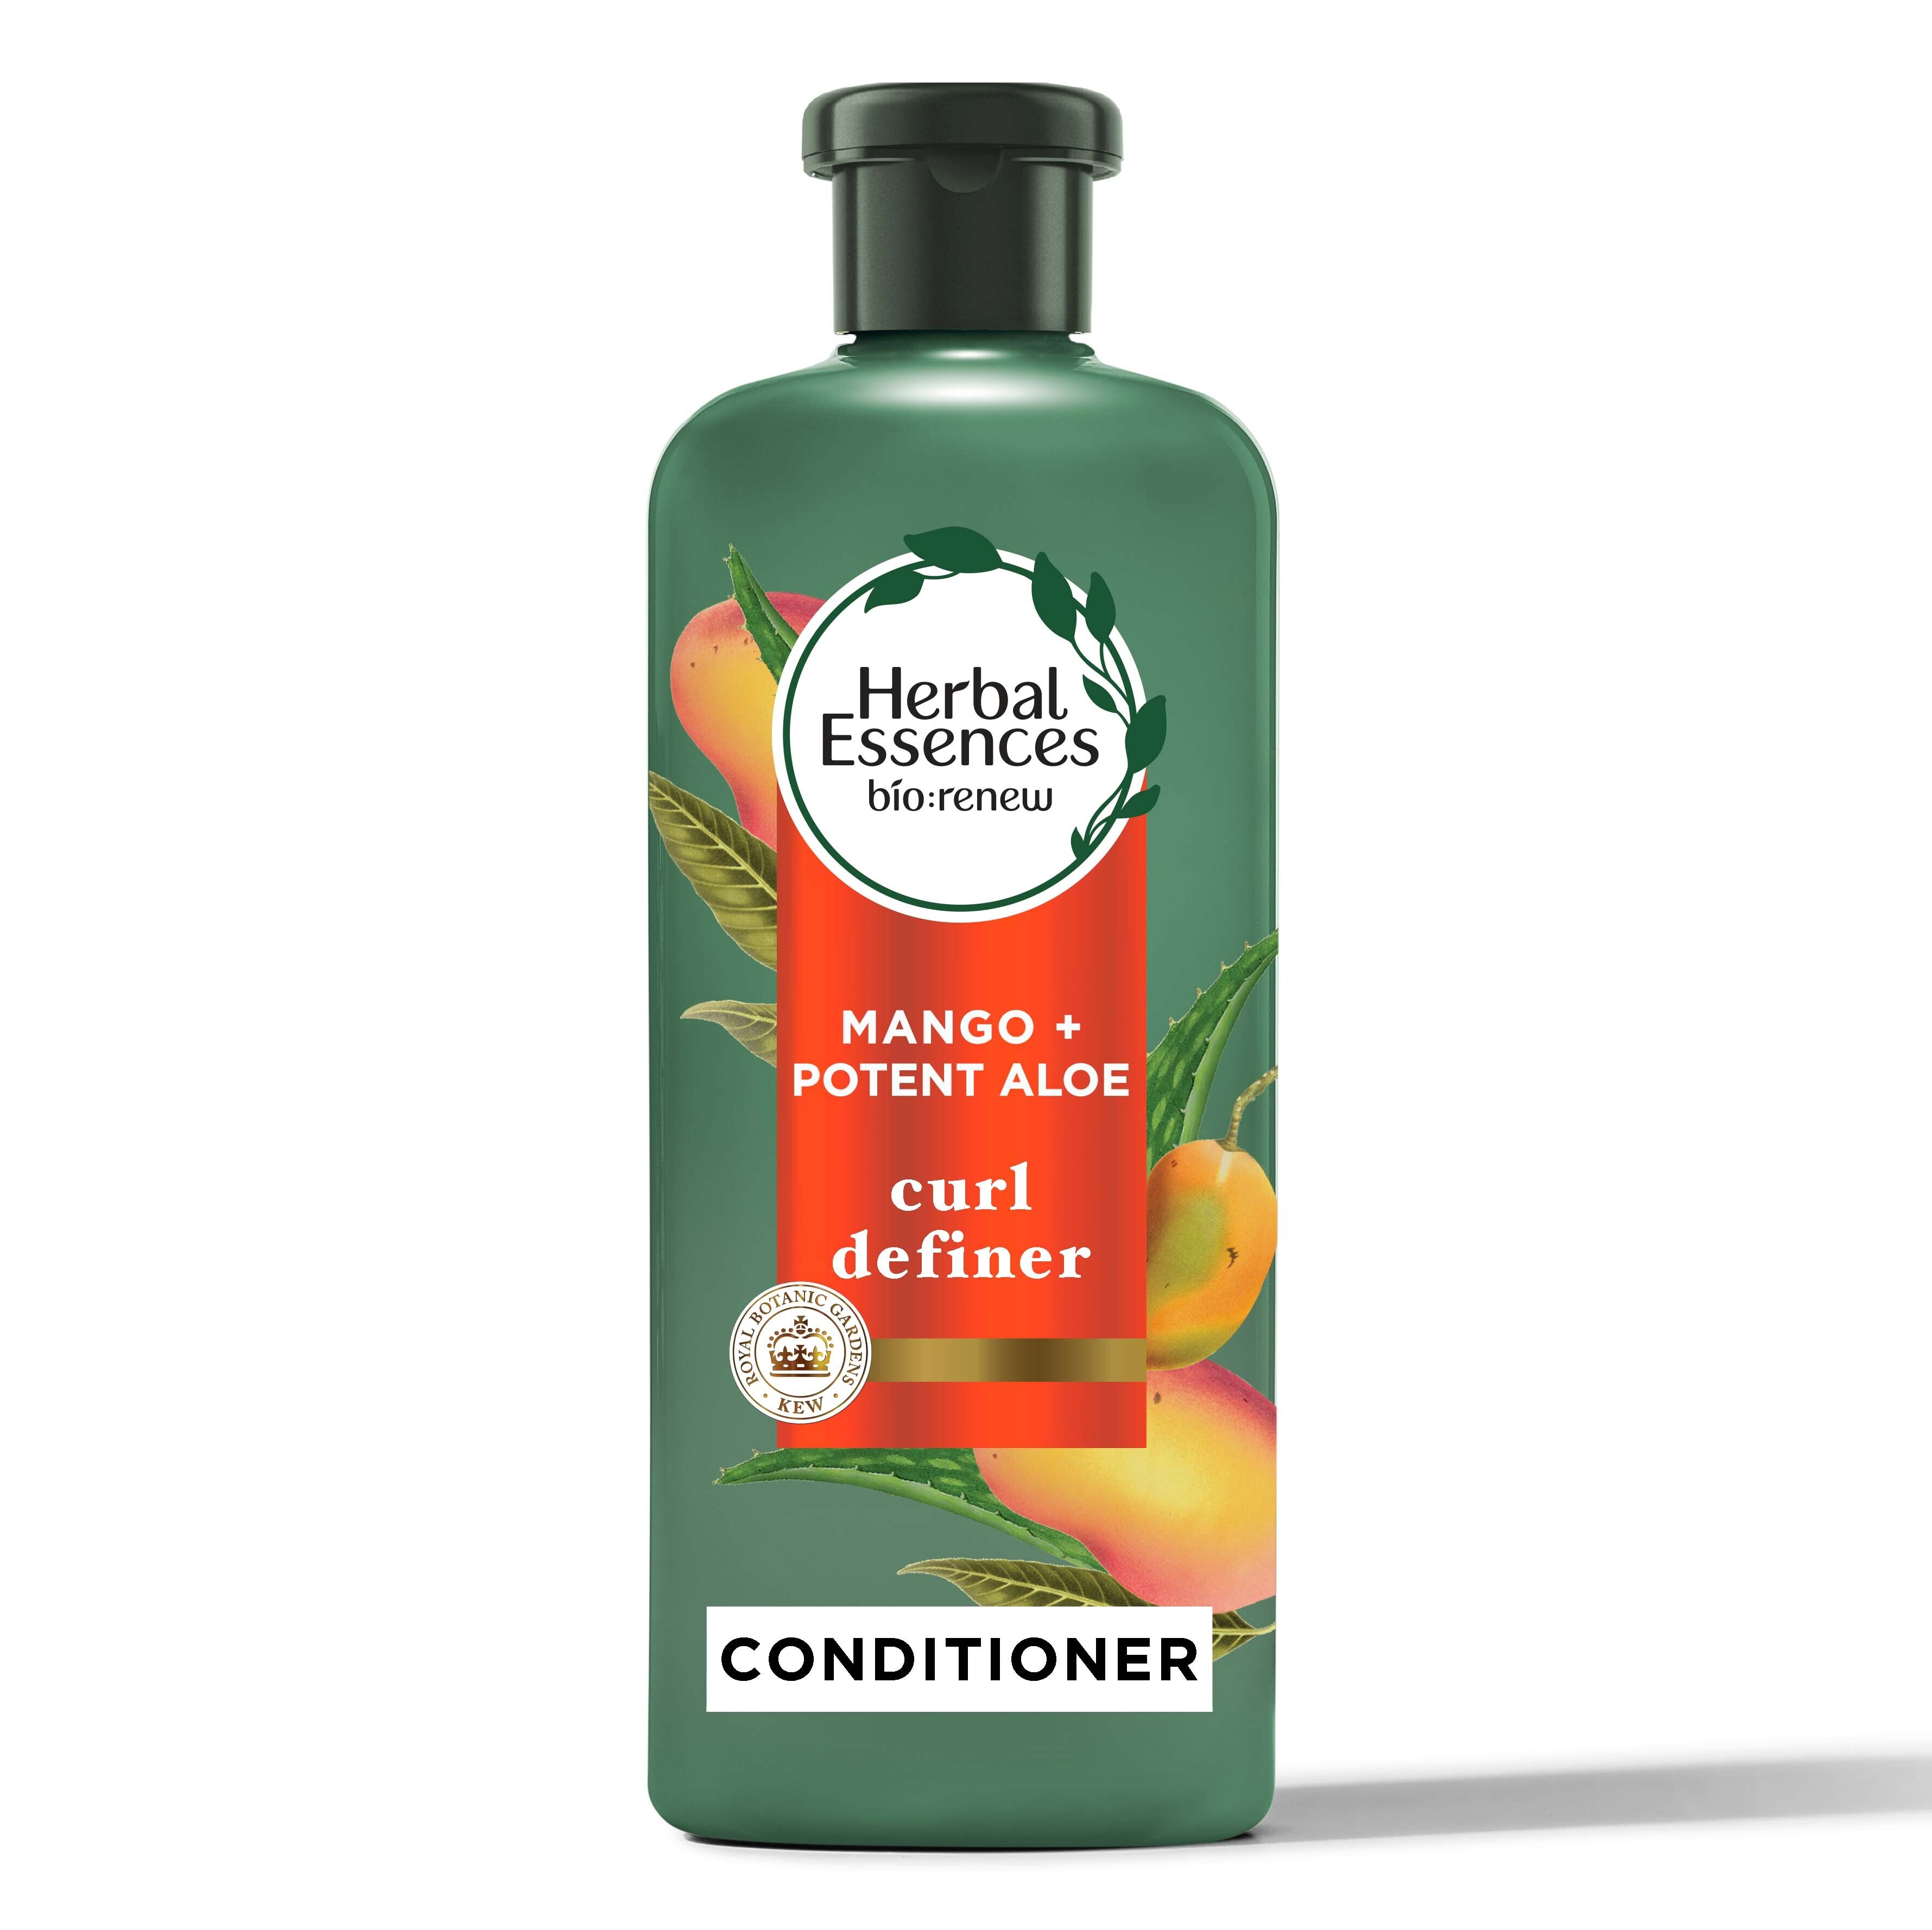 Herbal Essences Bio Renew Mango & Potent Aloe Curl Defining Conditioner, 13.5 Oz , CVS